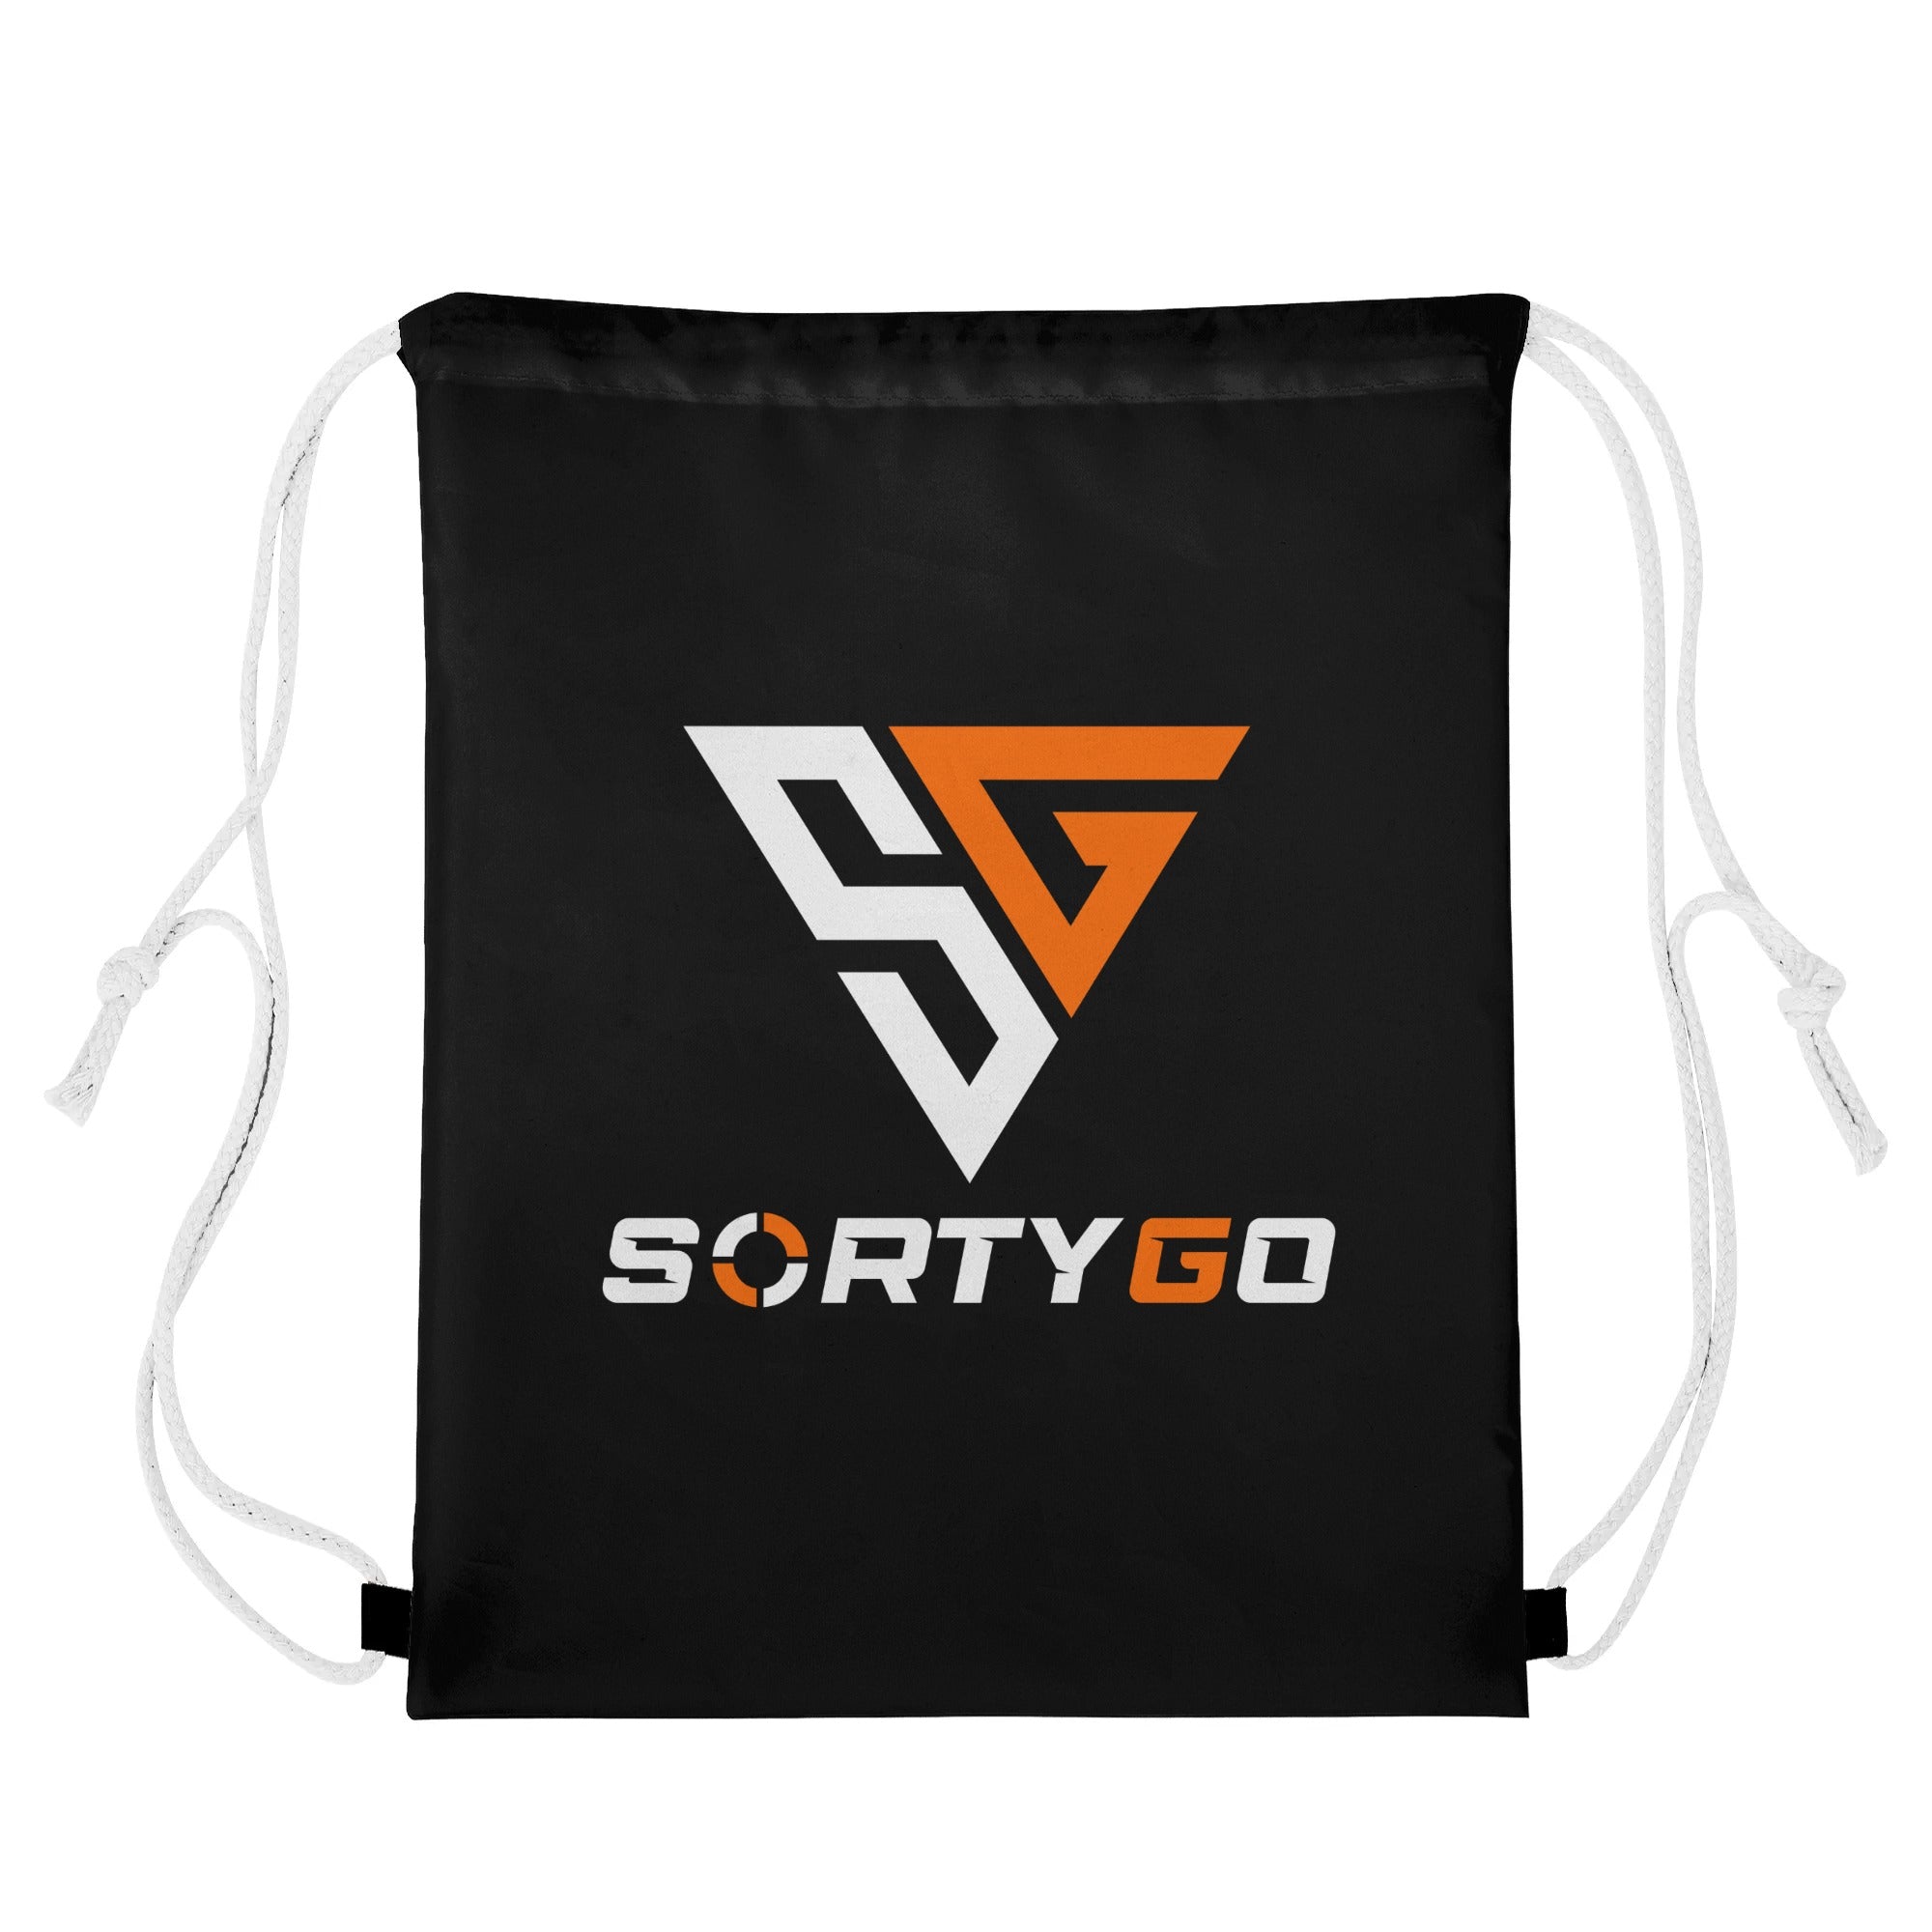 SORTYGO - Graffiti Drawstring Bag in